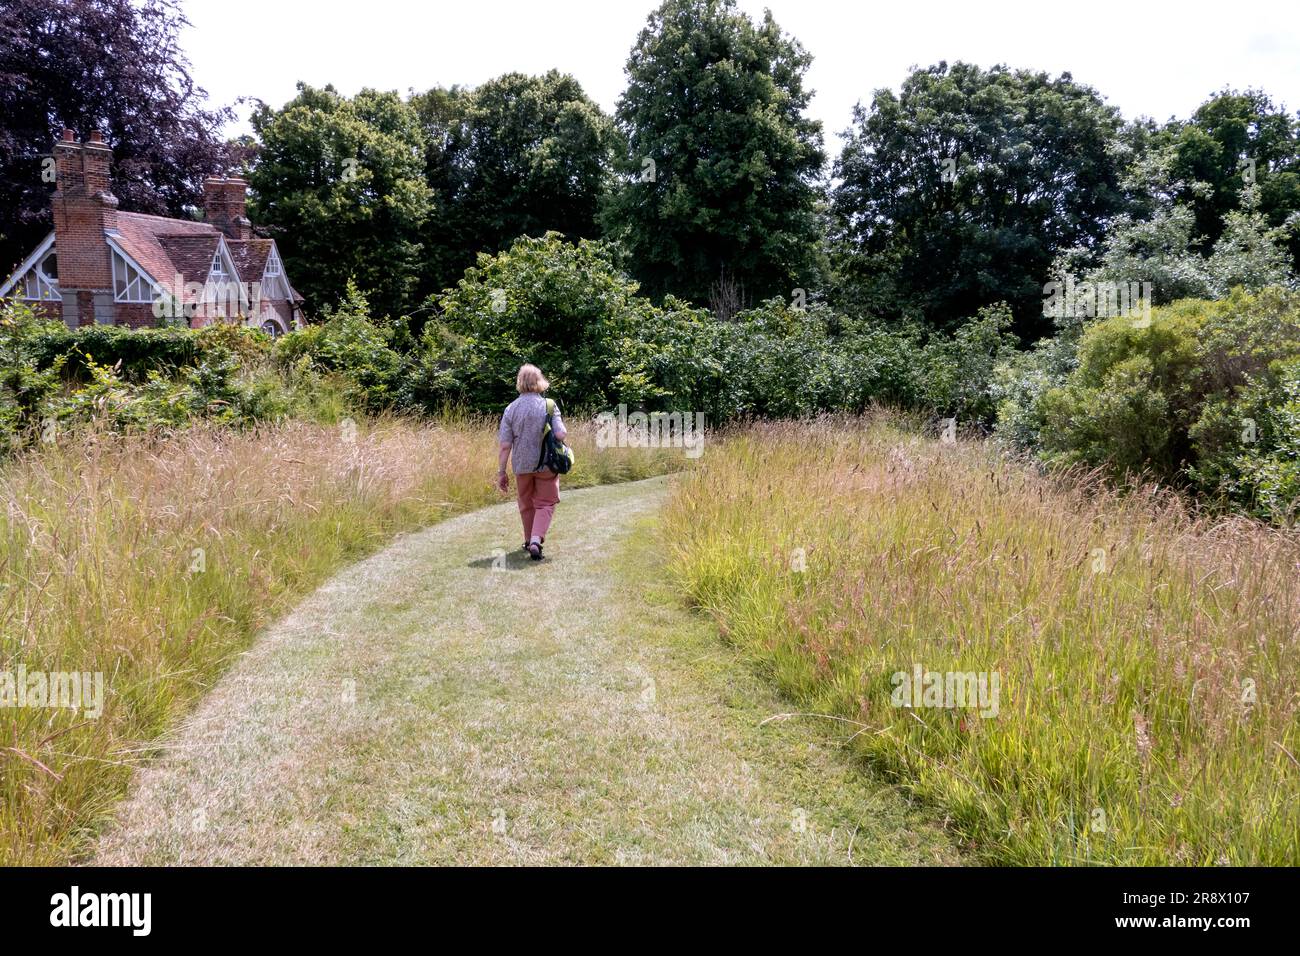 Mähweg auf einer Wiese in einem englischen Landgarten im Sommer Stockfoto